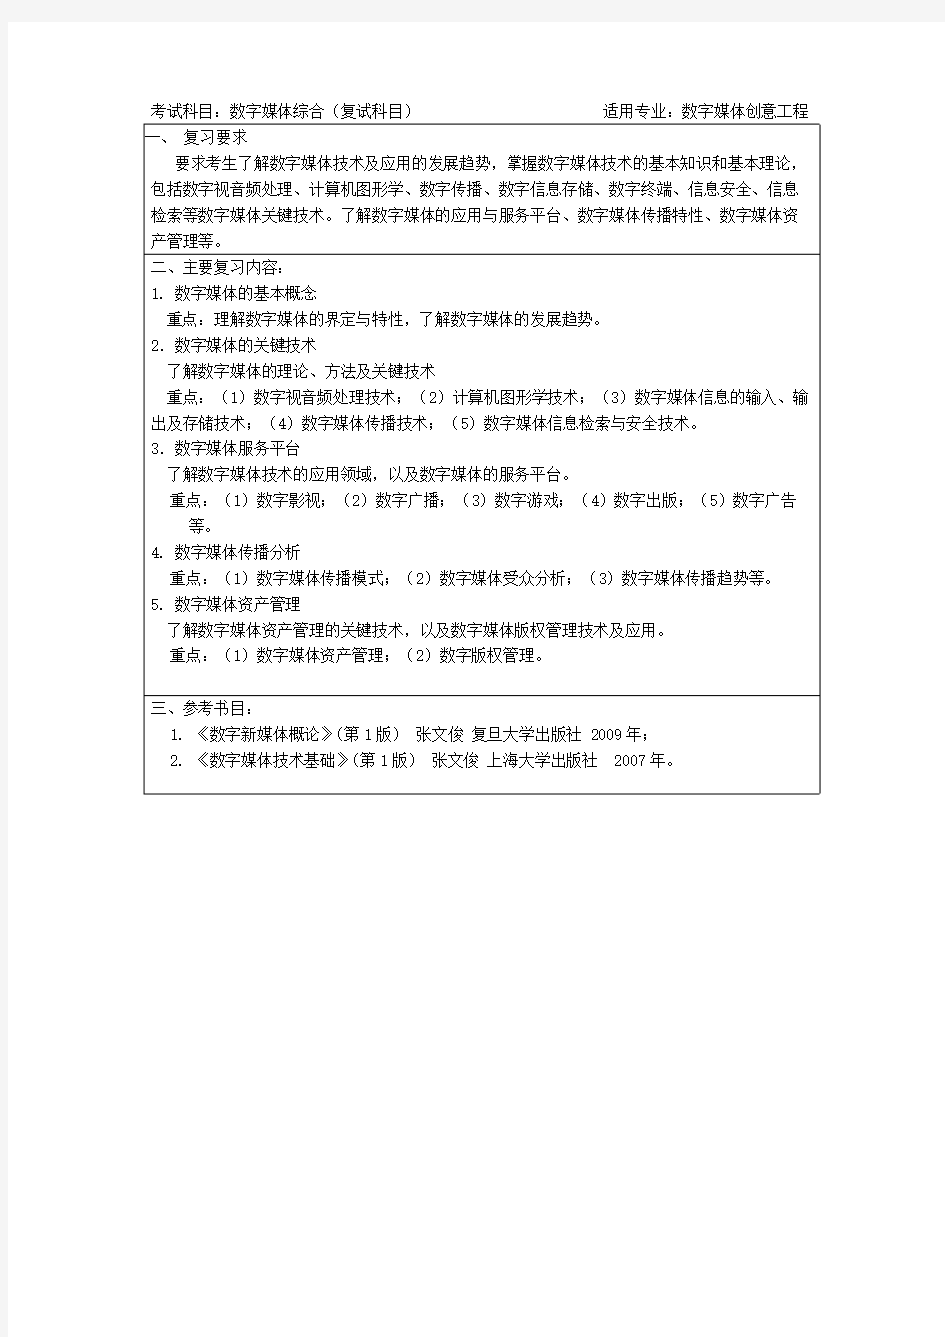 上海大学《数字媒体综合》2019年考研专业课复试大纲